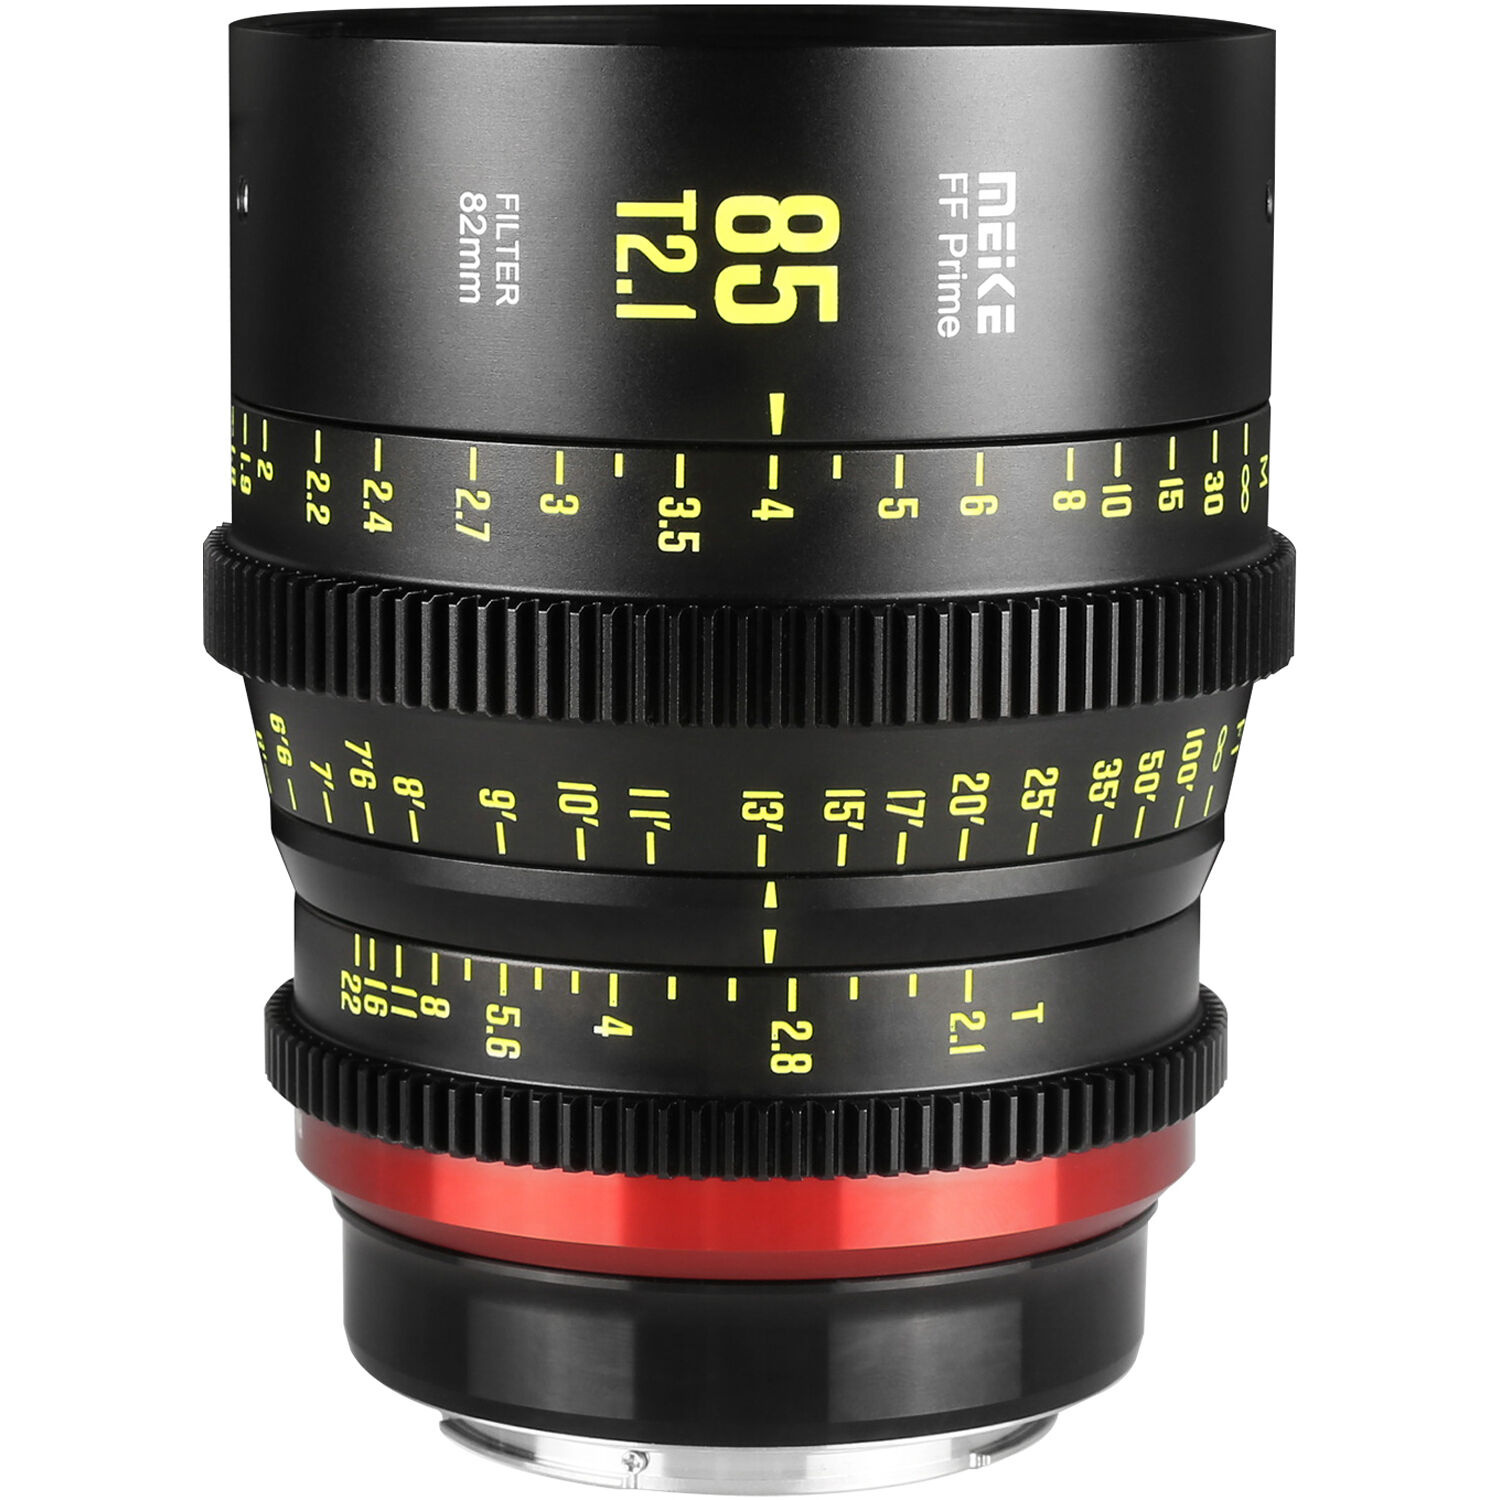 Meike 85mm T2.1 Full-Frame Prime Cine Lens (E-Mount, Feet/Meters)